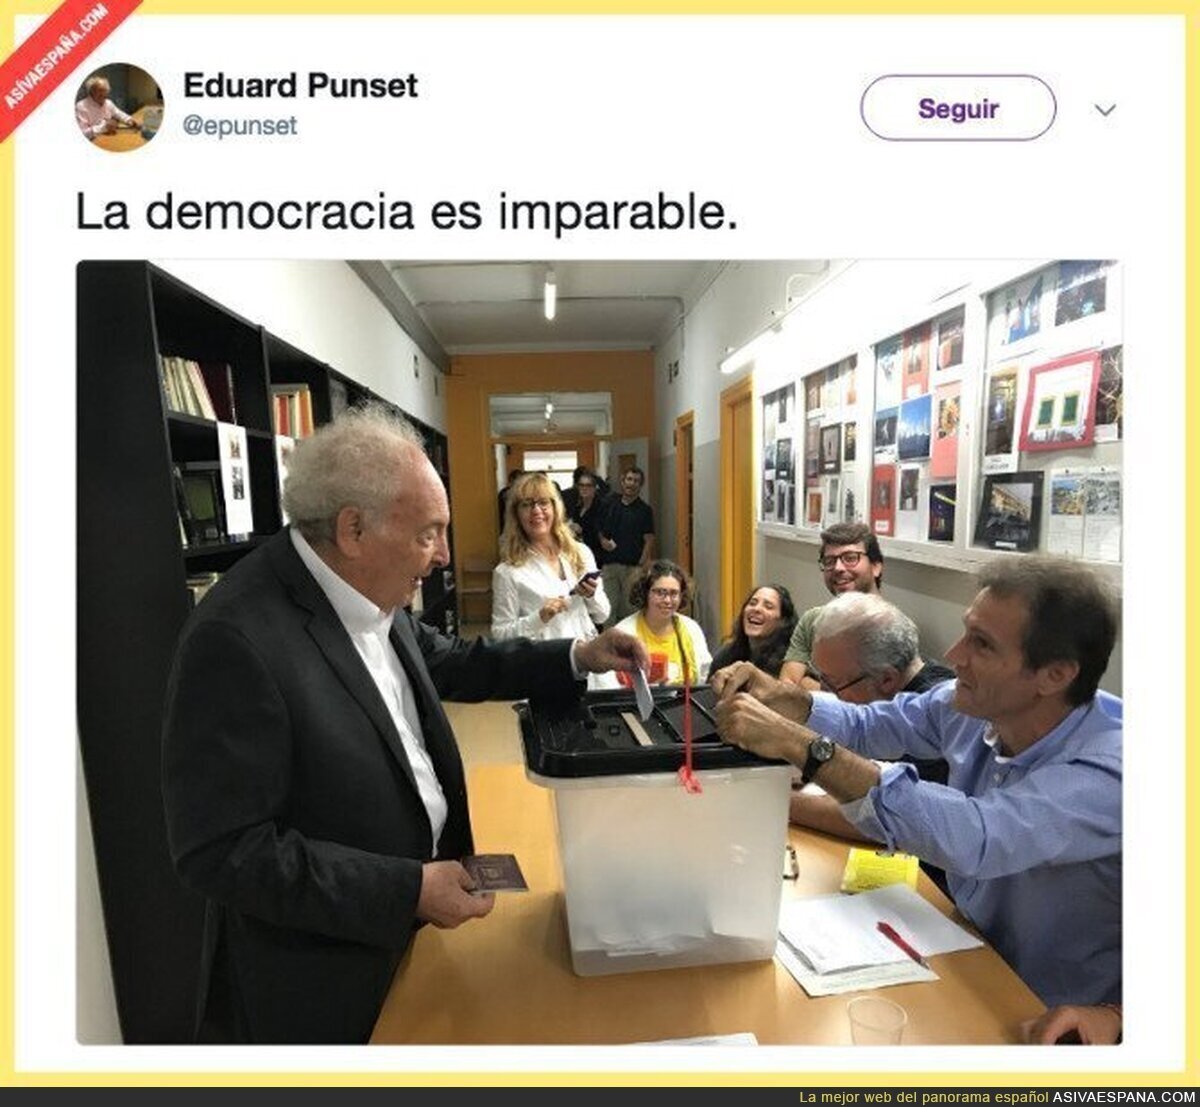 Eduard Punset también quiere democracia